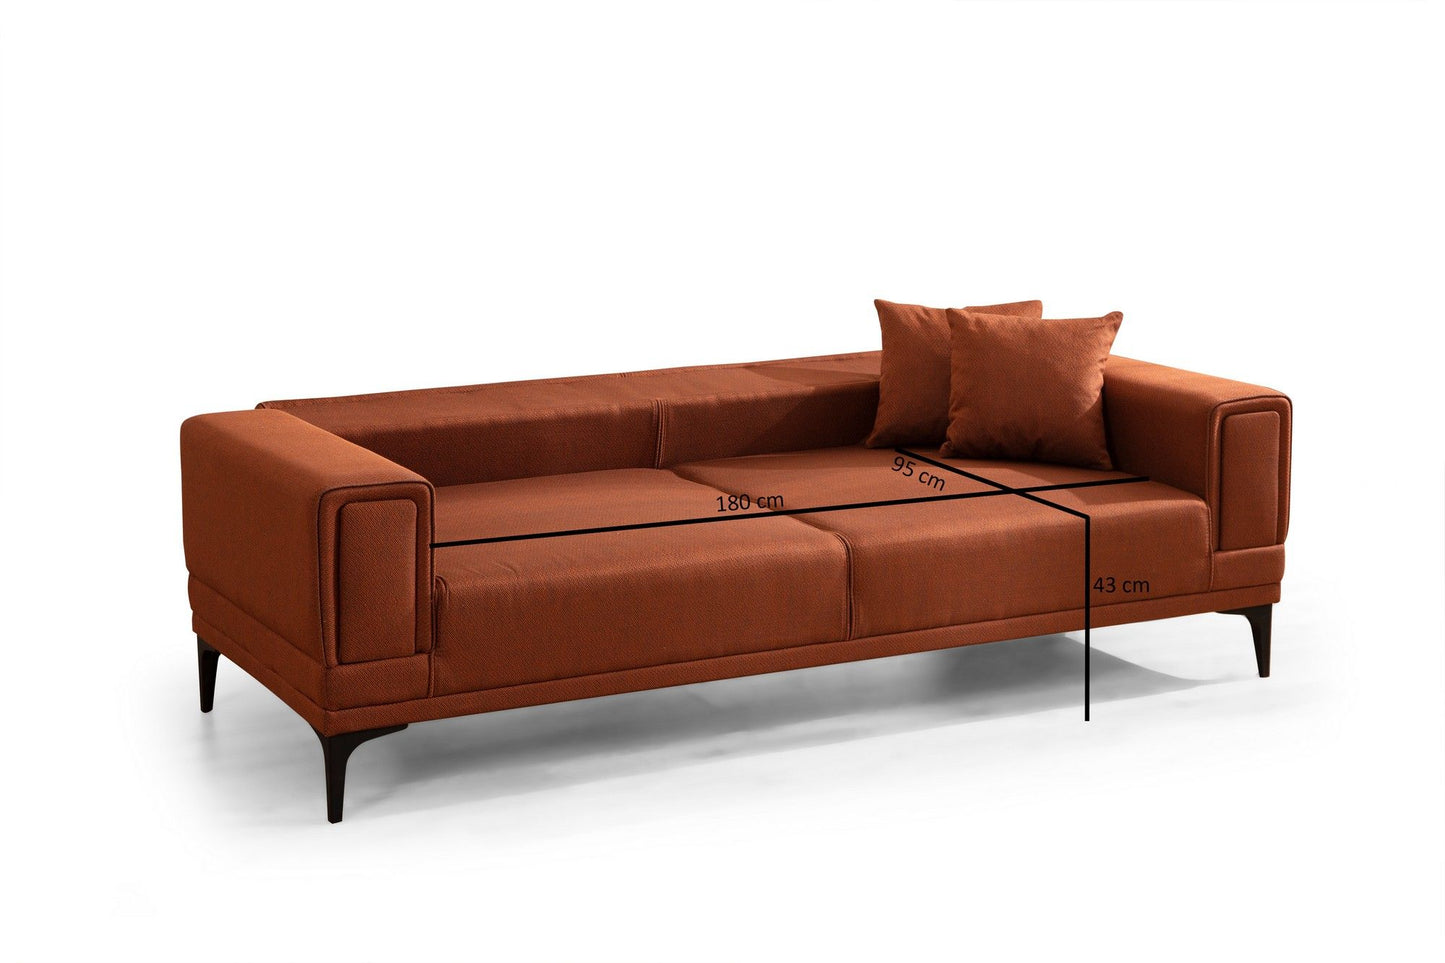 Horizon - Tile Red - 3-Seat Sofa-Bed